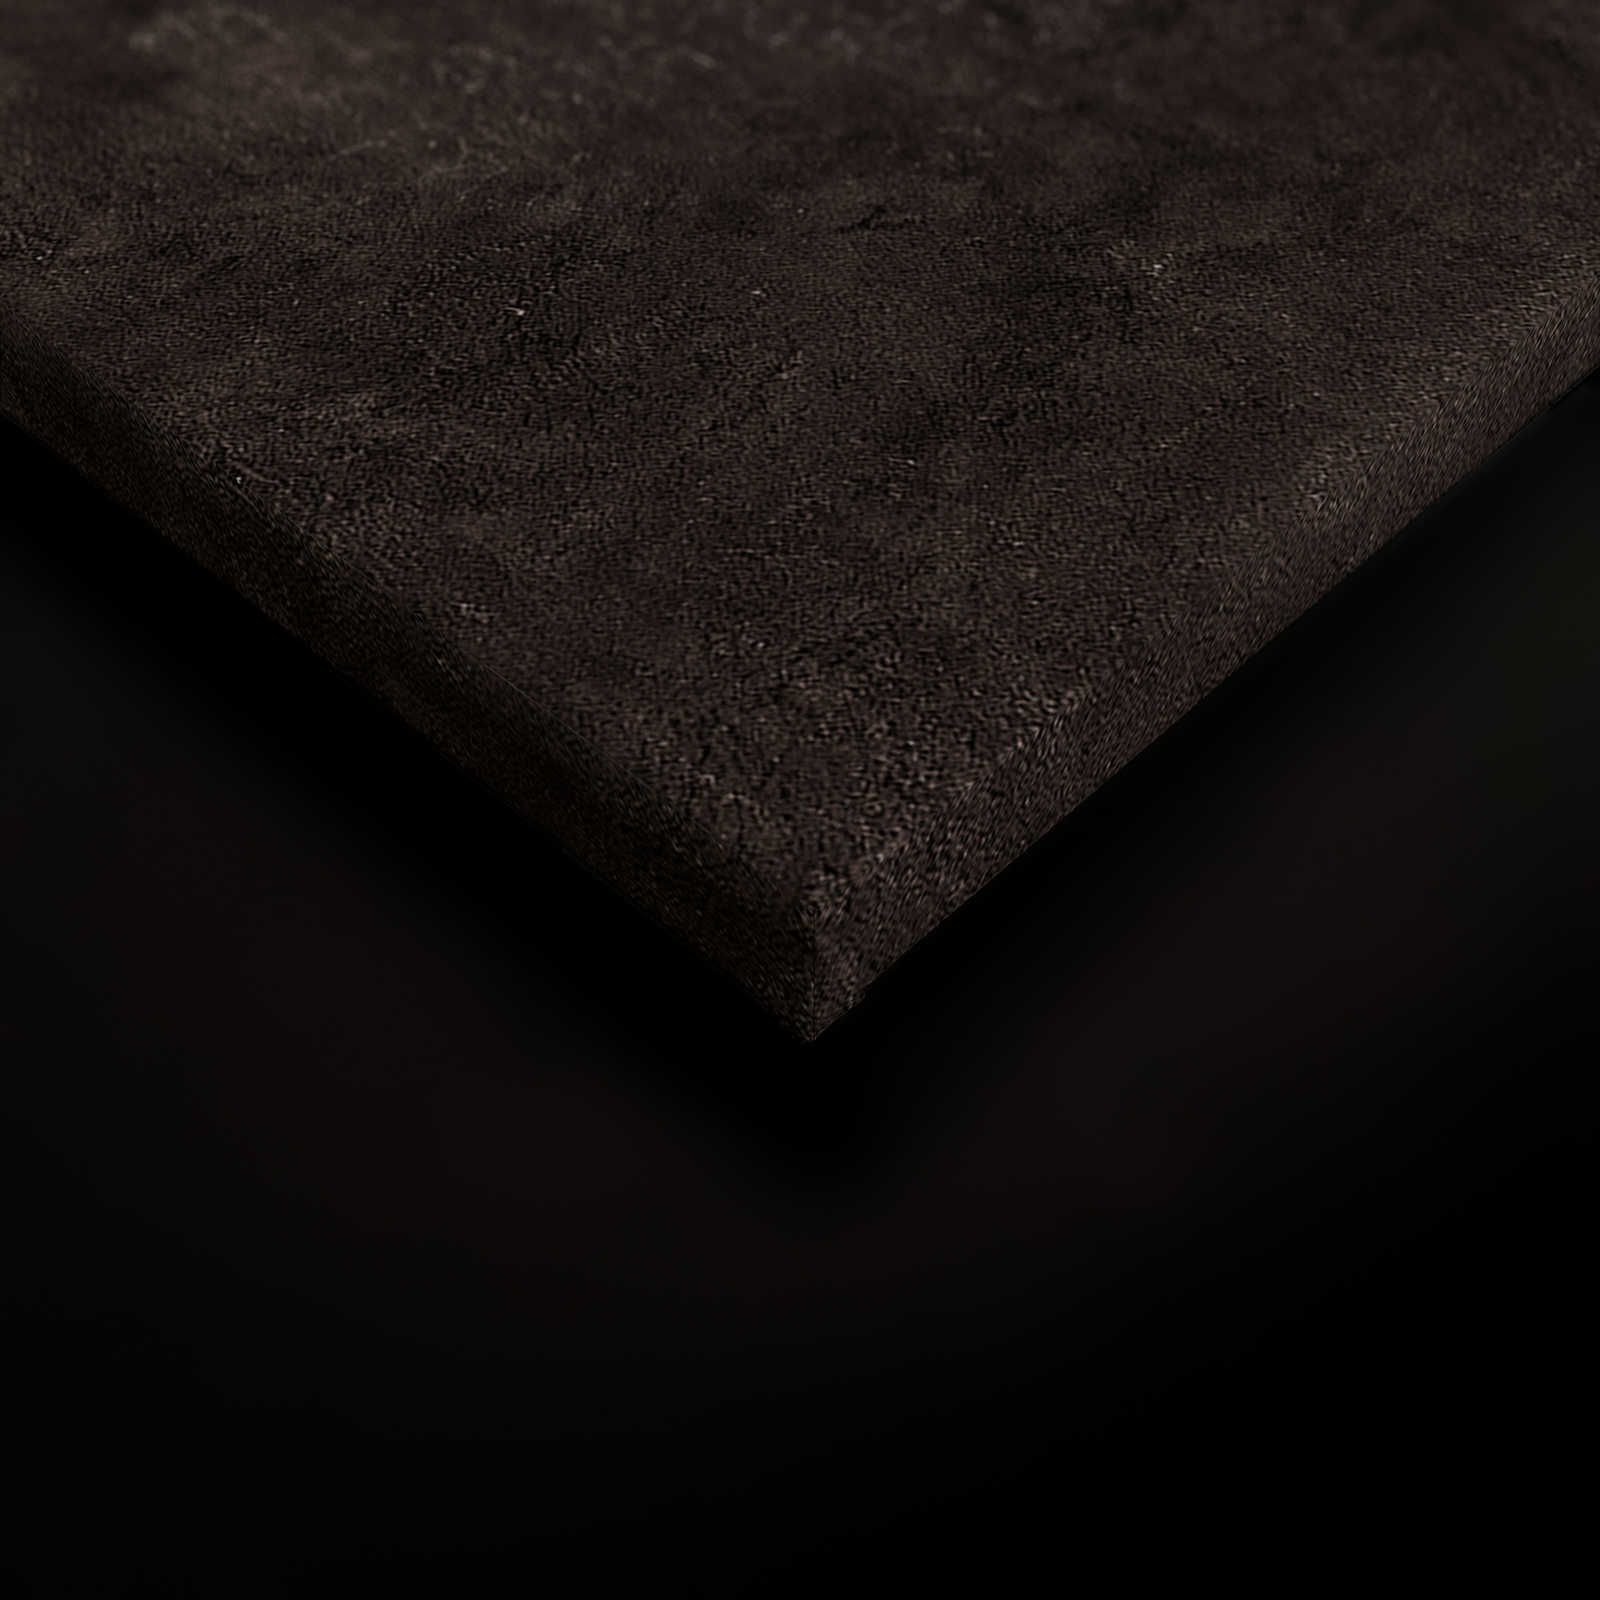             Palomas Room 2 - Quadro su tela nera Ritratto astratto - 0,90 m x 0,60 m
        